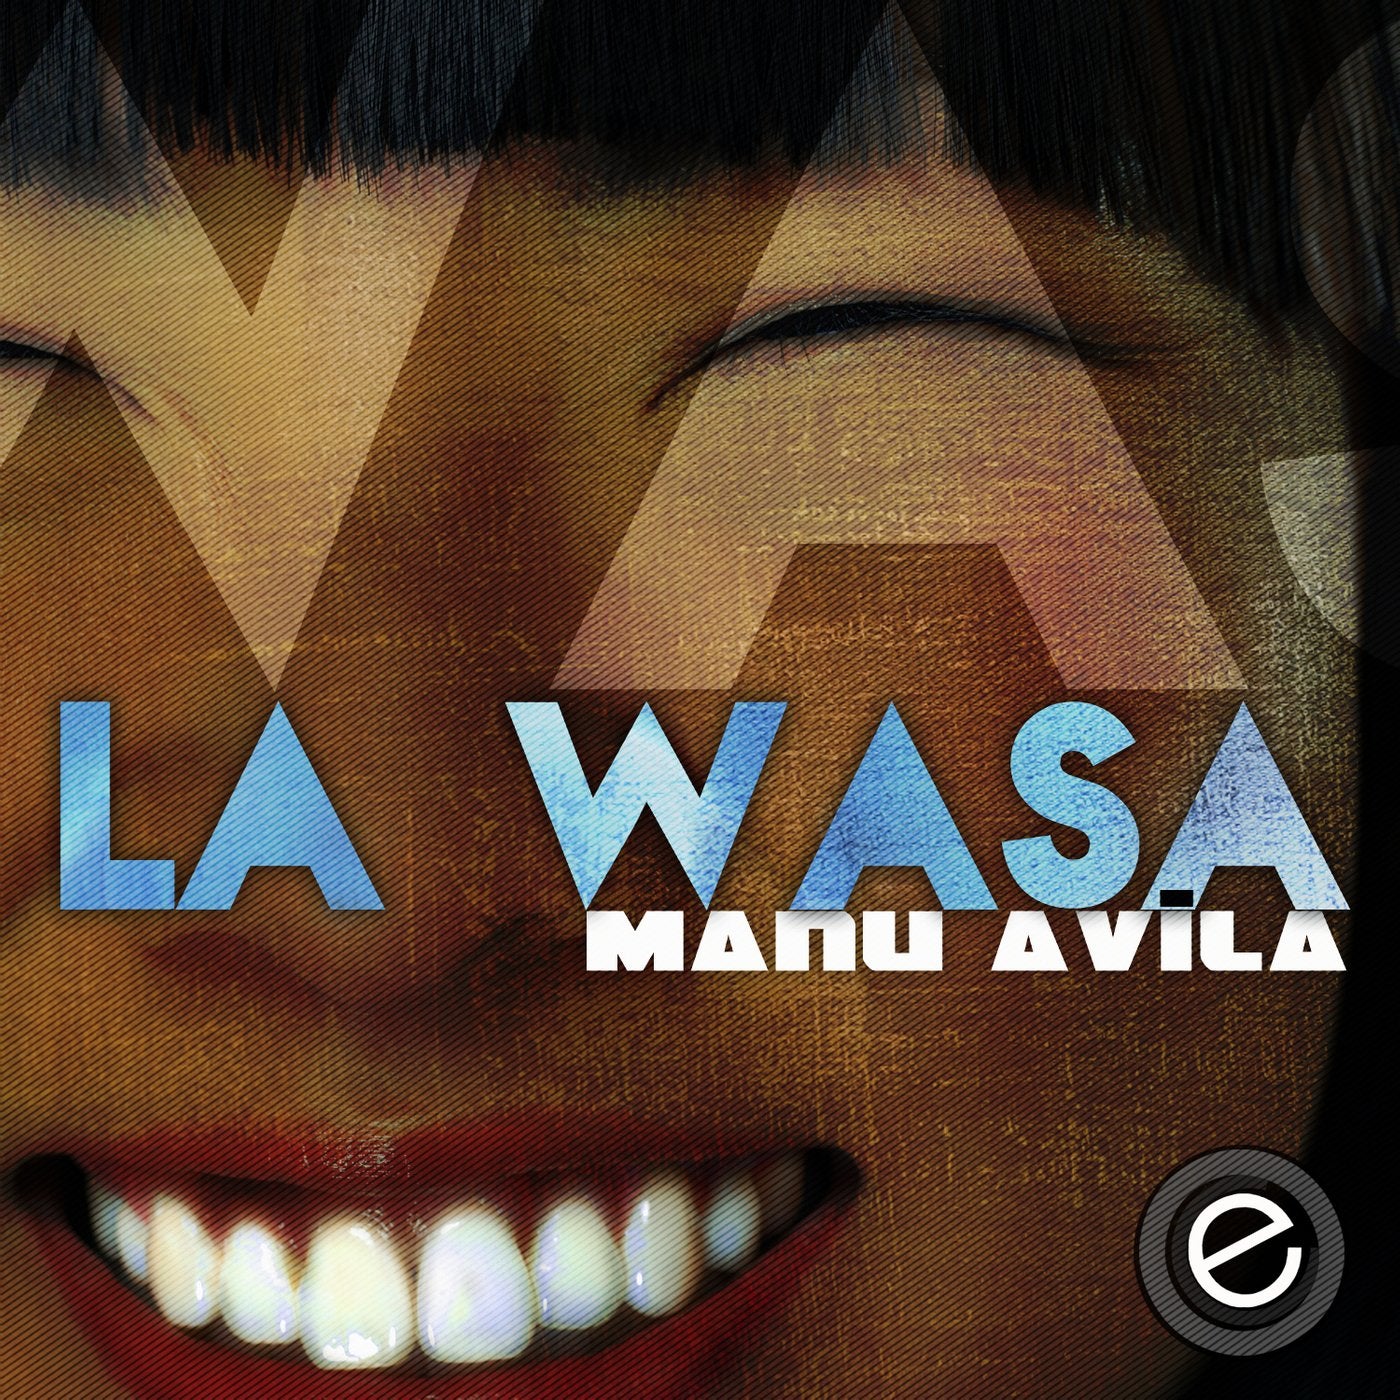 La Wasa